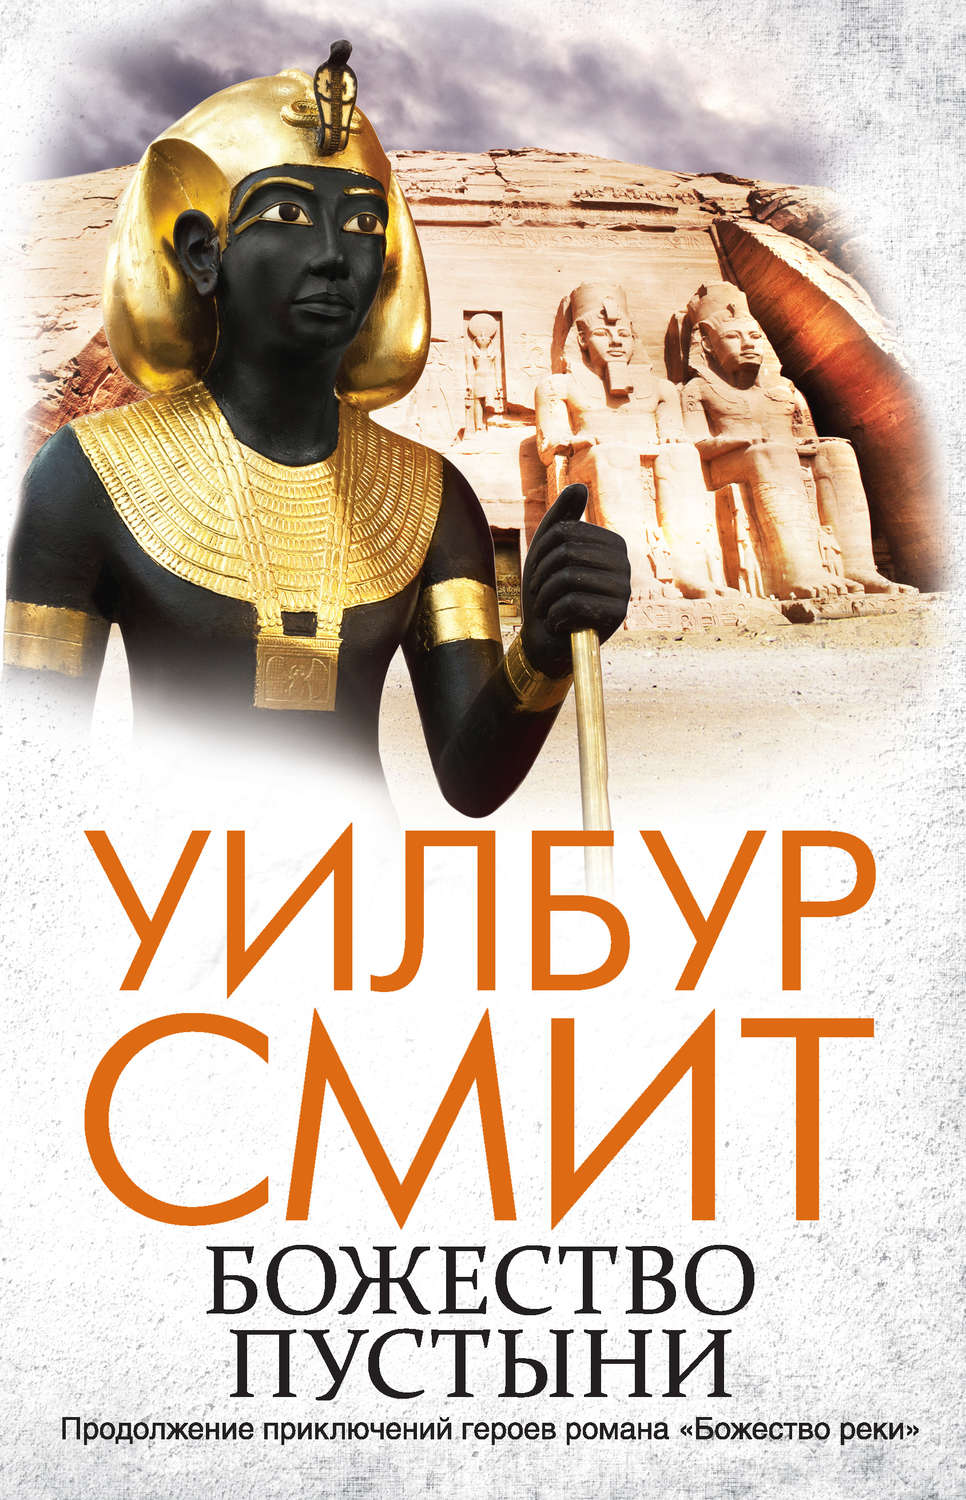 Скачать бесплатно книгу история древнего египта